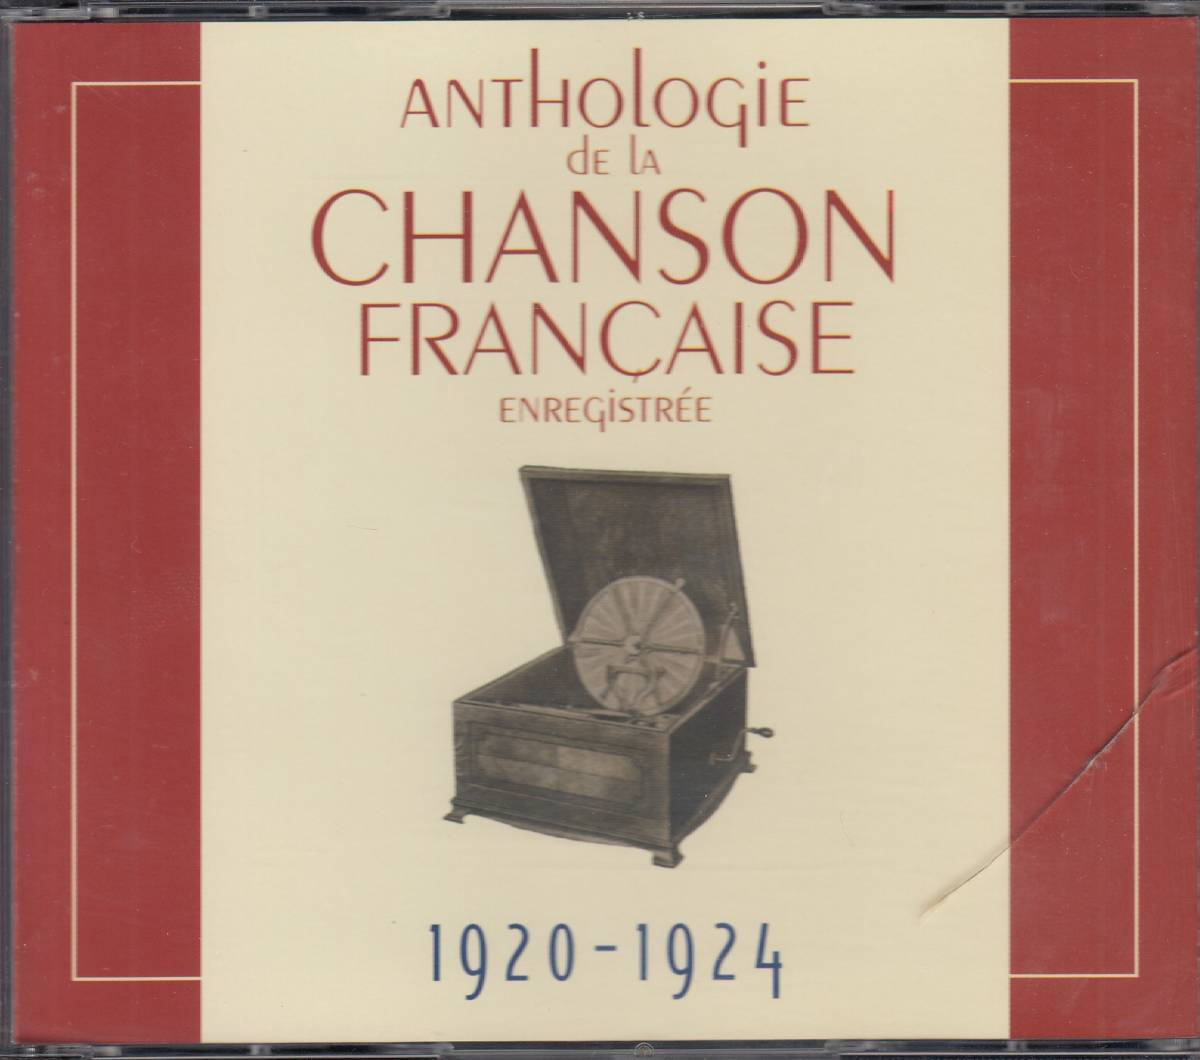  транспорт VA / Anthologie De La Chanson Franaise Enregistre - 1920-1930 10CD* стандарт номер #1989702-A/B* бесплатная доставка # быстрое решение * переговоры иметь 